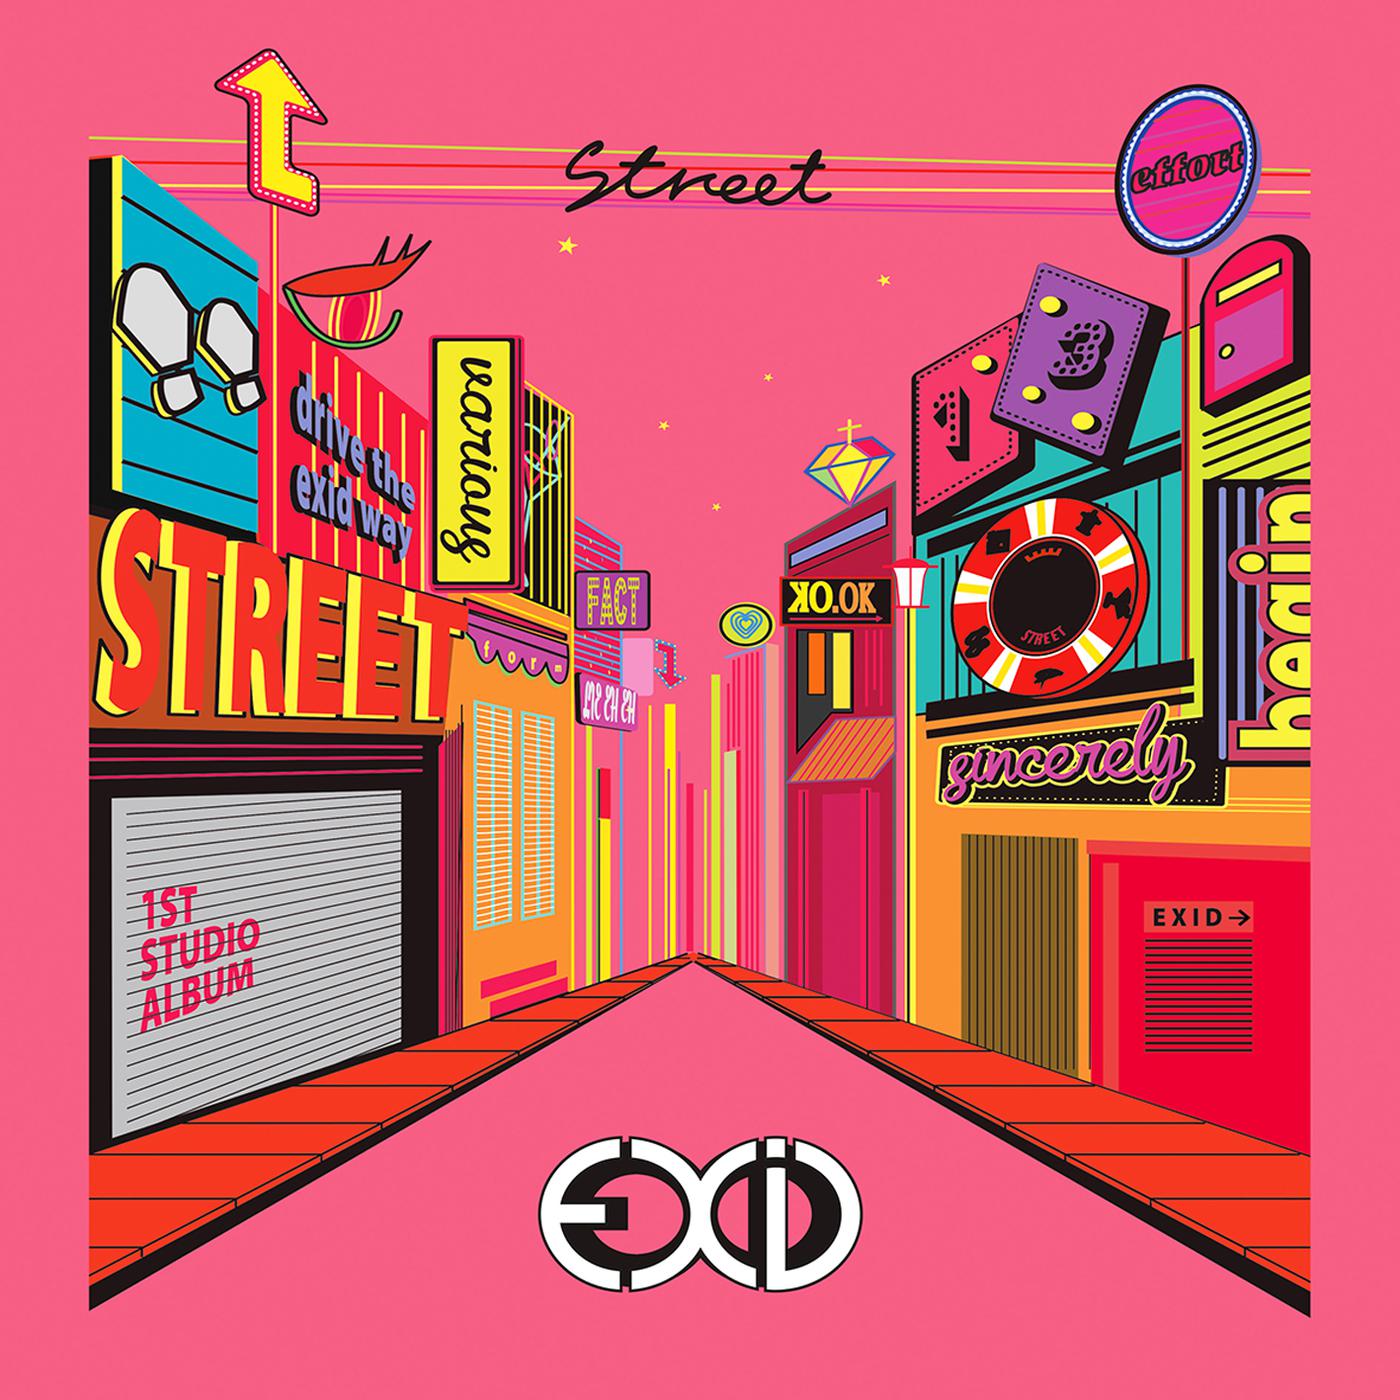 데려다줄래歌词 歌手EXID-专辑STREET-单曲《데려다줄래》LRC歌词下载